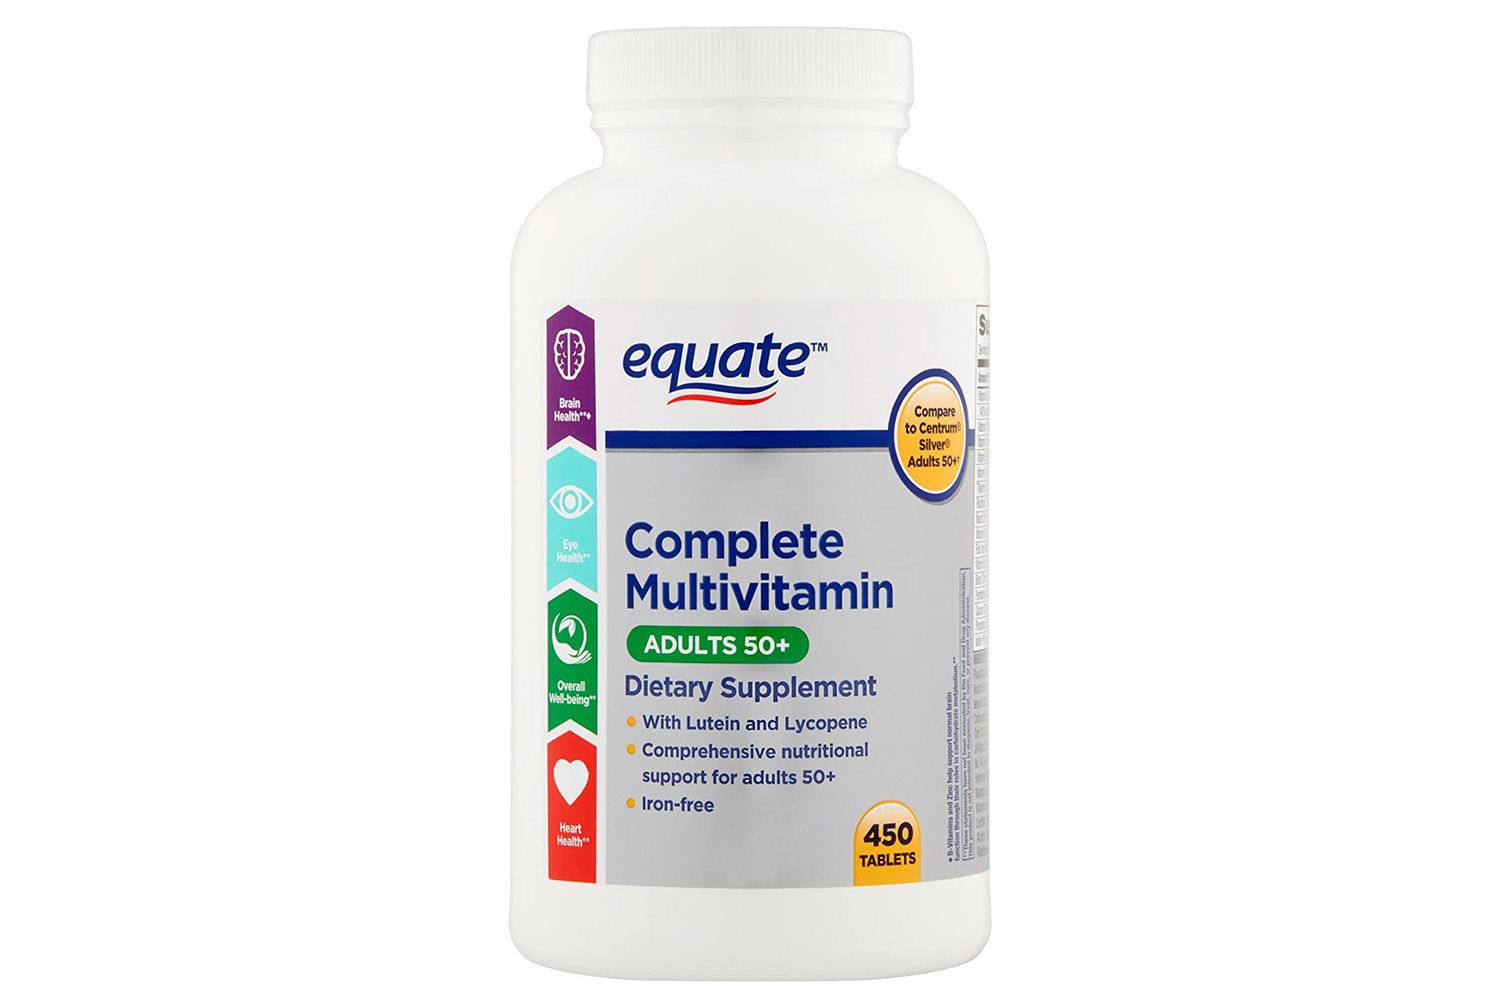 Equate Complete Multivitamine 50+